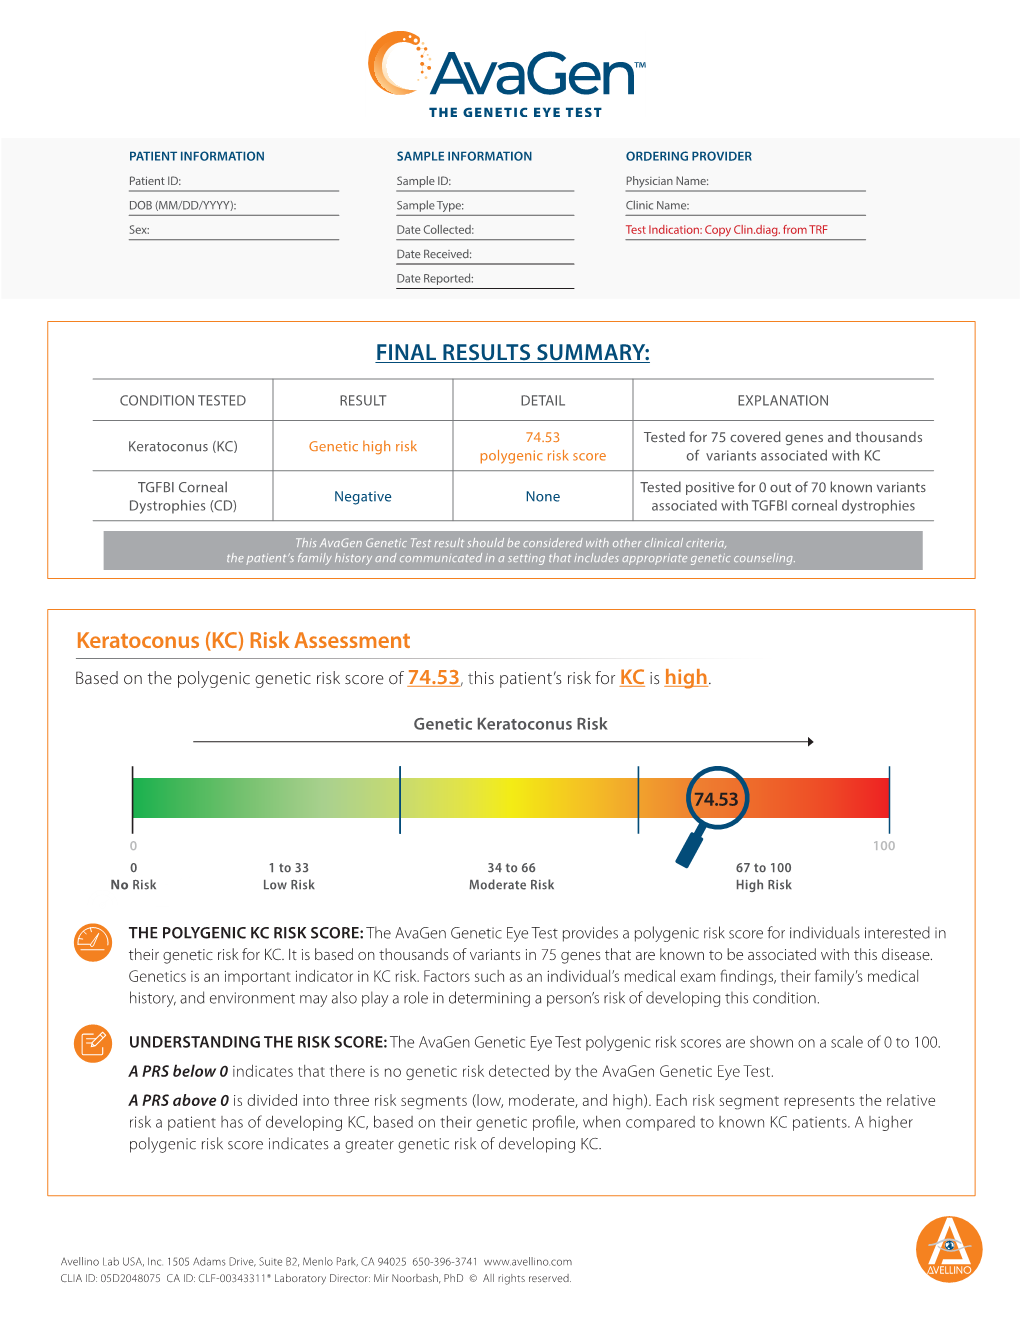 FINAL RESULTS SUMMARY: Keratoconus (KC) Risk Assessment